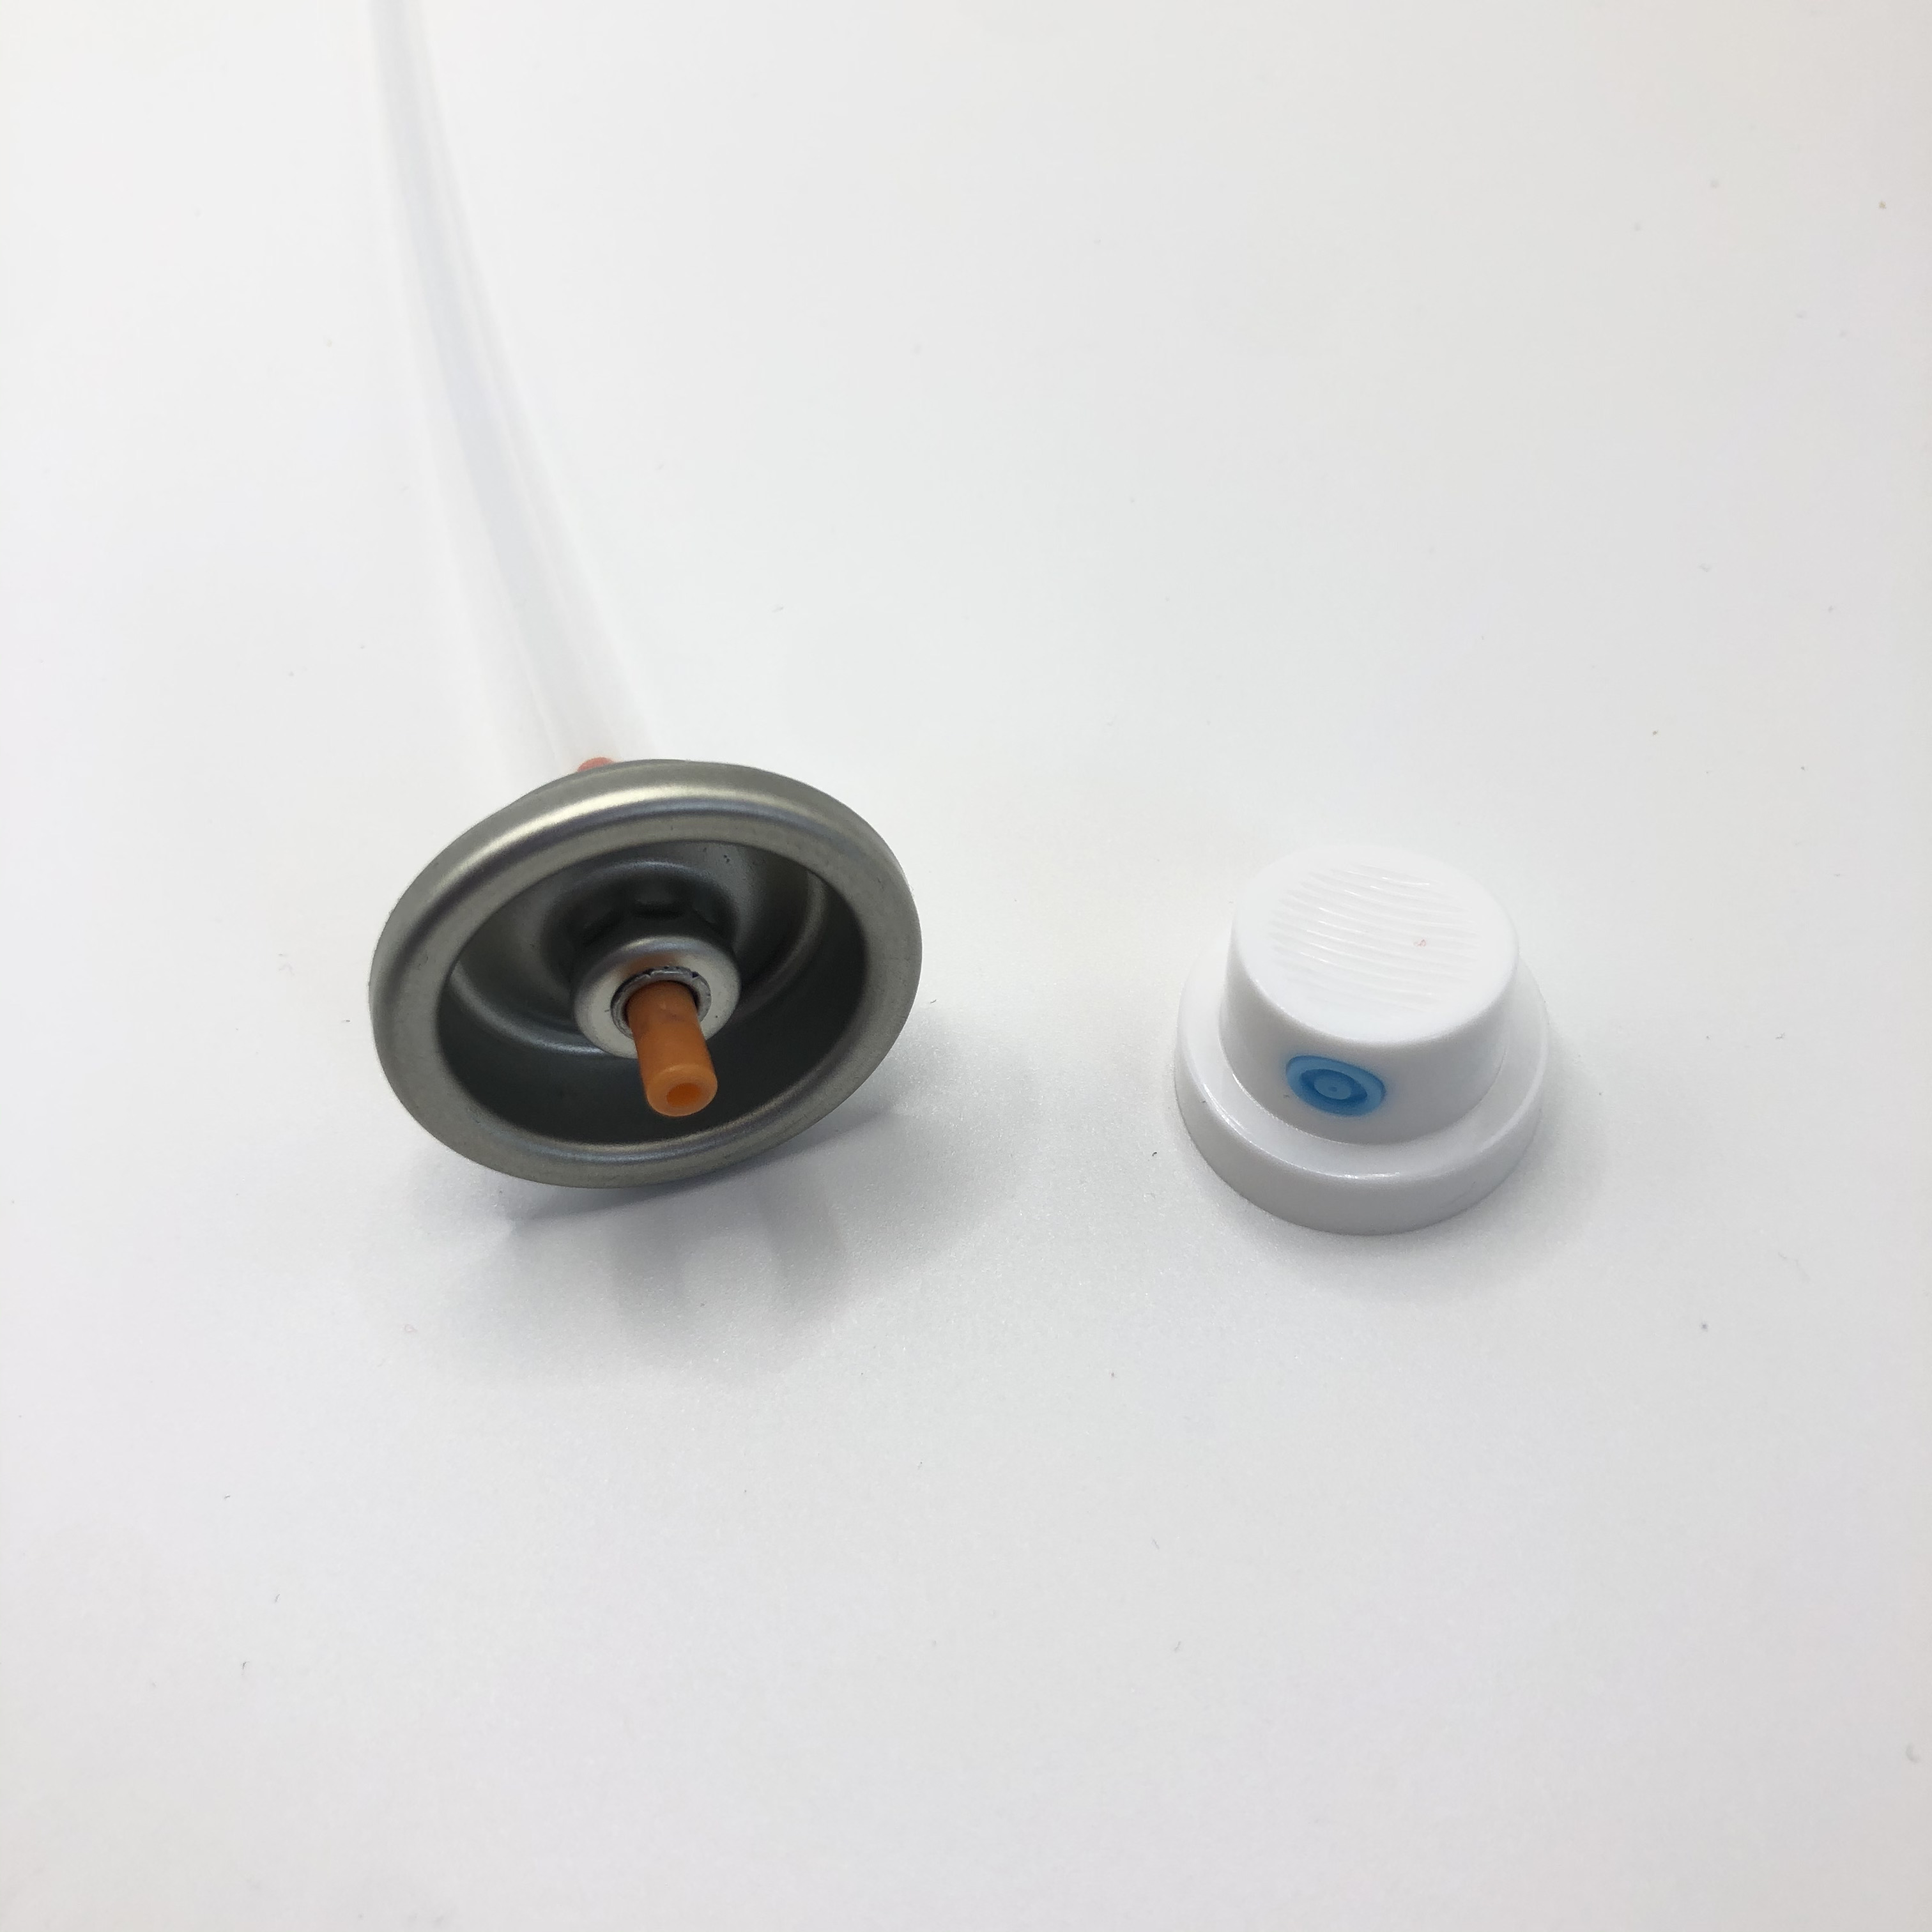 Точный клапан распыления краски для профессиональной отделки - регулируемое управление давлением и распыление давления